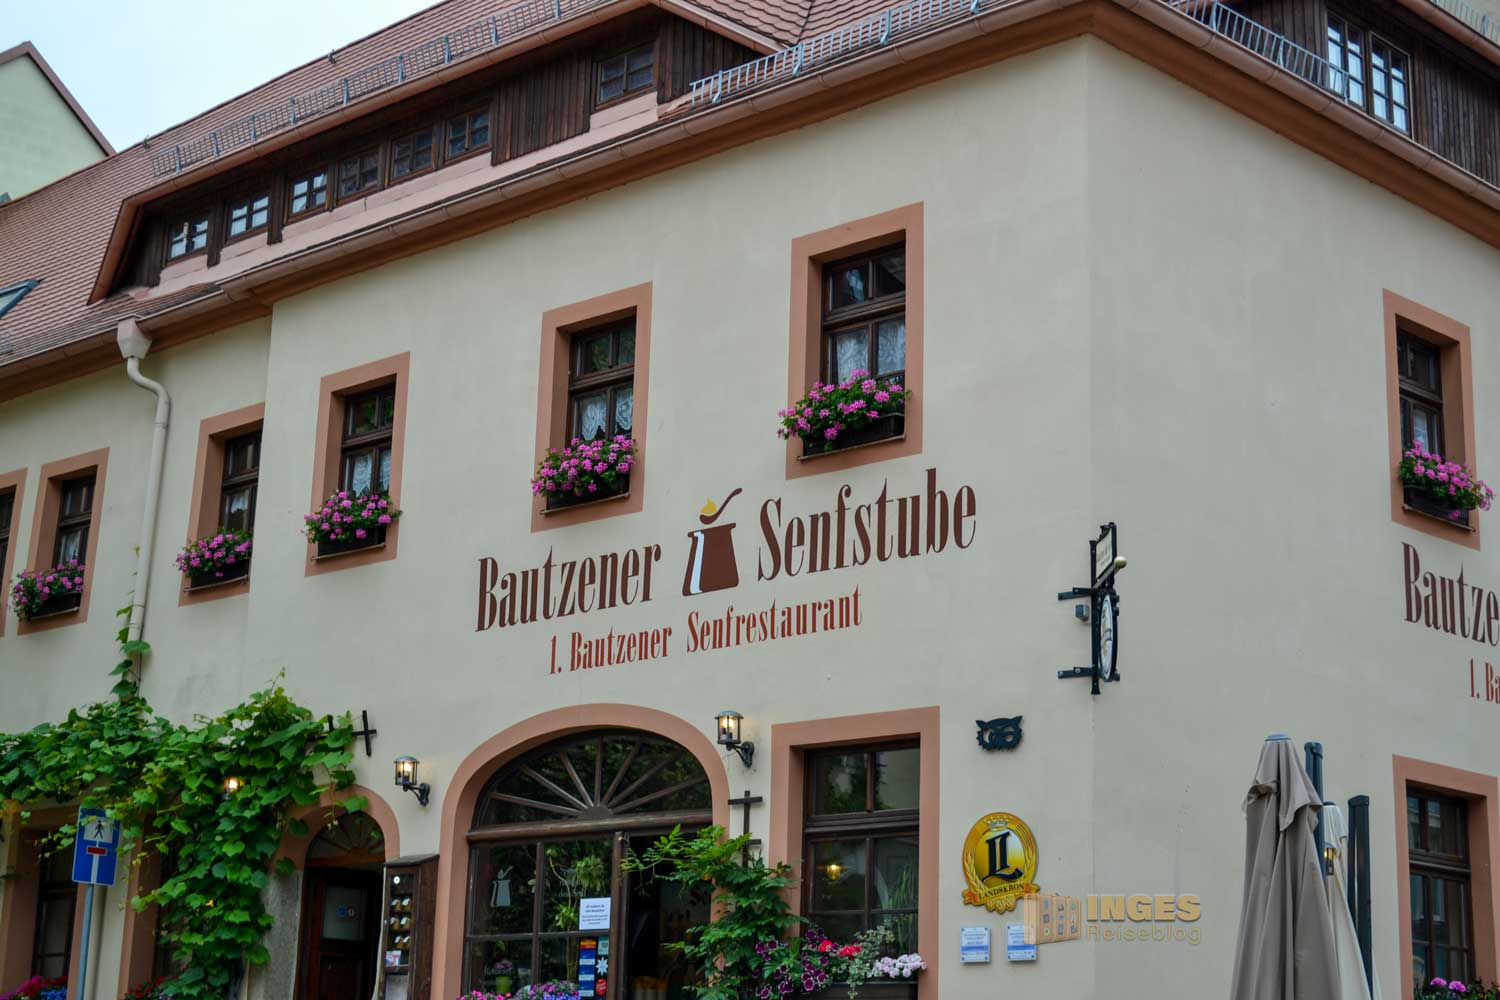 Bautzener Senfstube in Bautzen